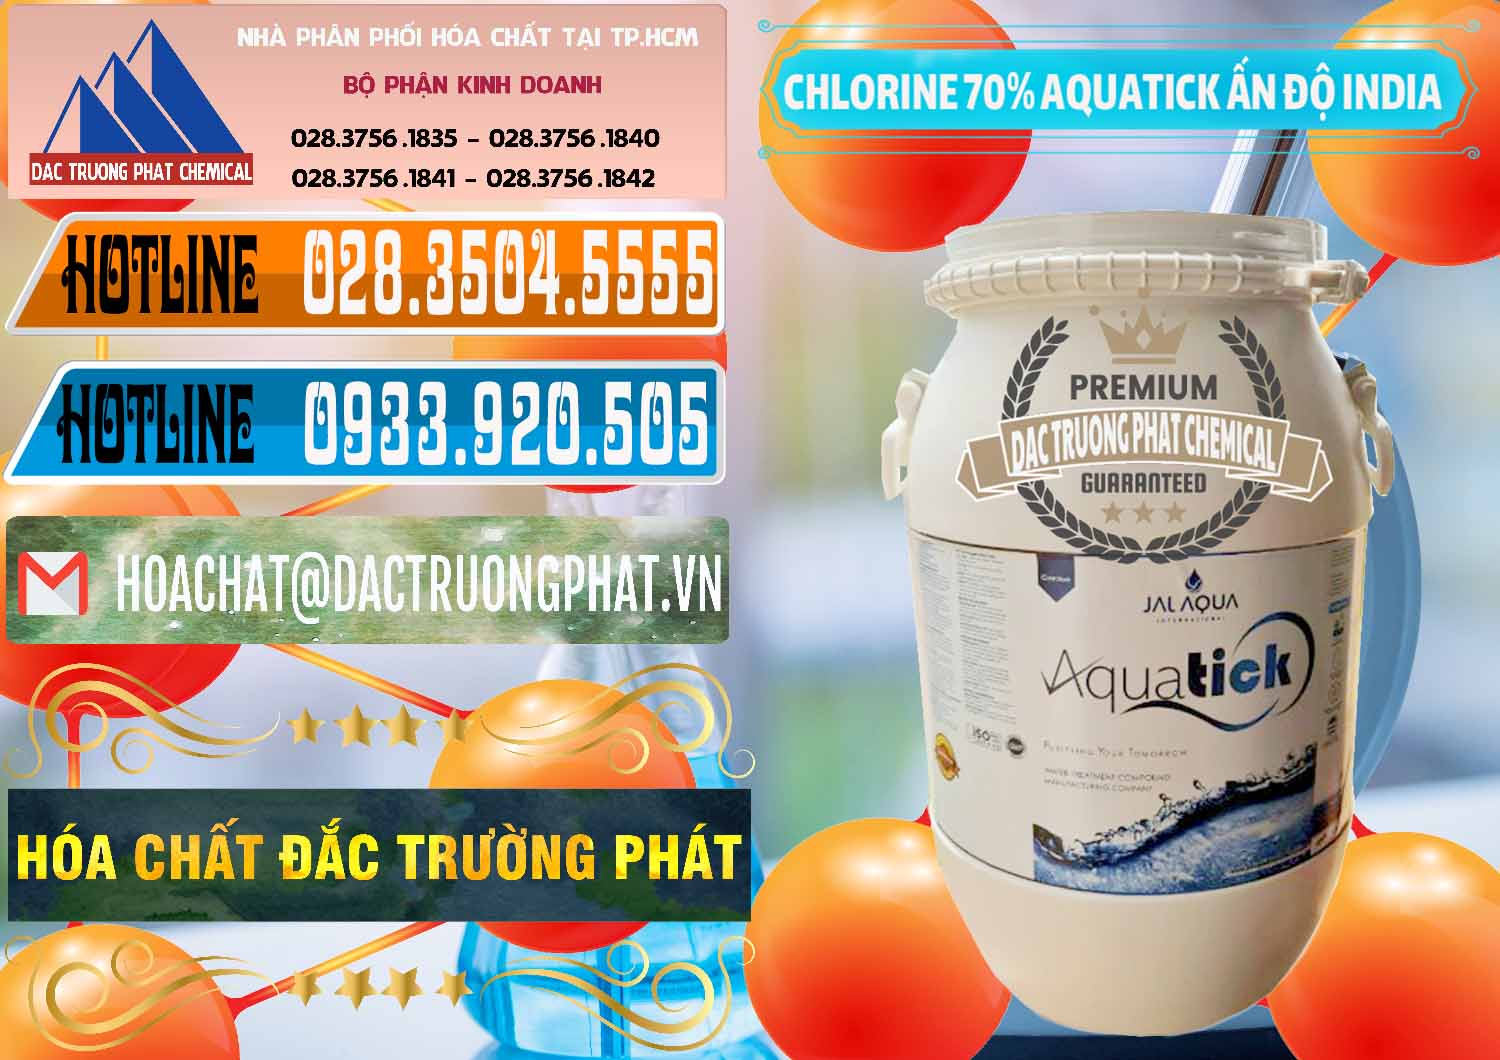 Chuyên cung cấp _ bán Chlorine – Clorin 70% Aquatick Jal Aqua Ấn Độ India - 0215 - Công ty nhập khẩu và phân phối hóa chất tại TP.HCM - stmp.net